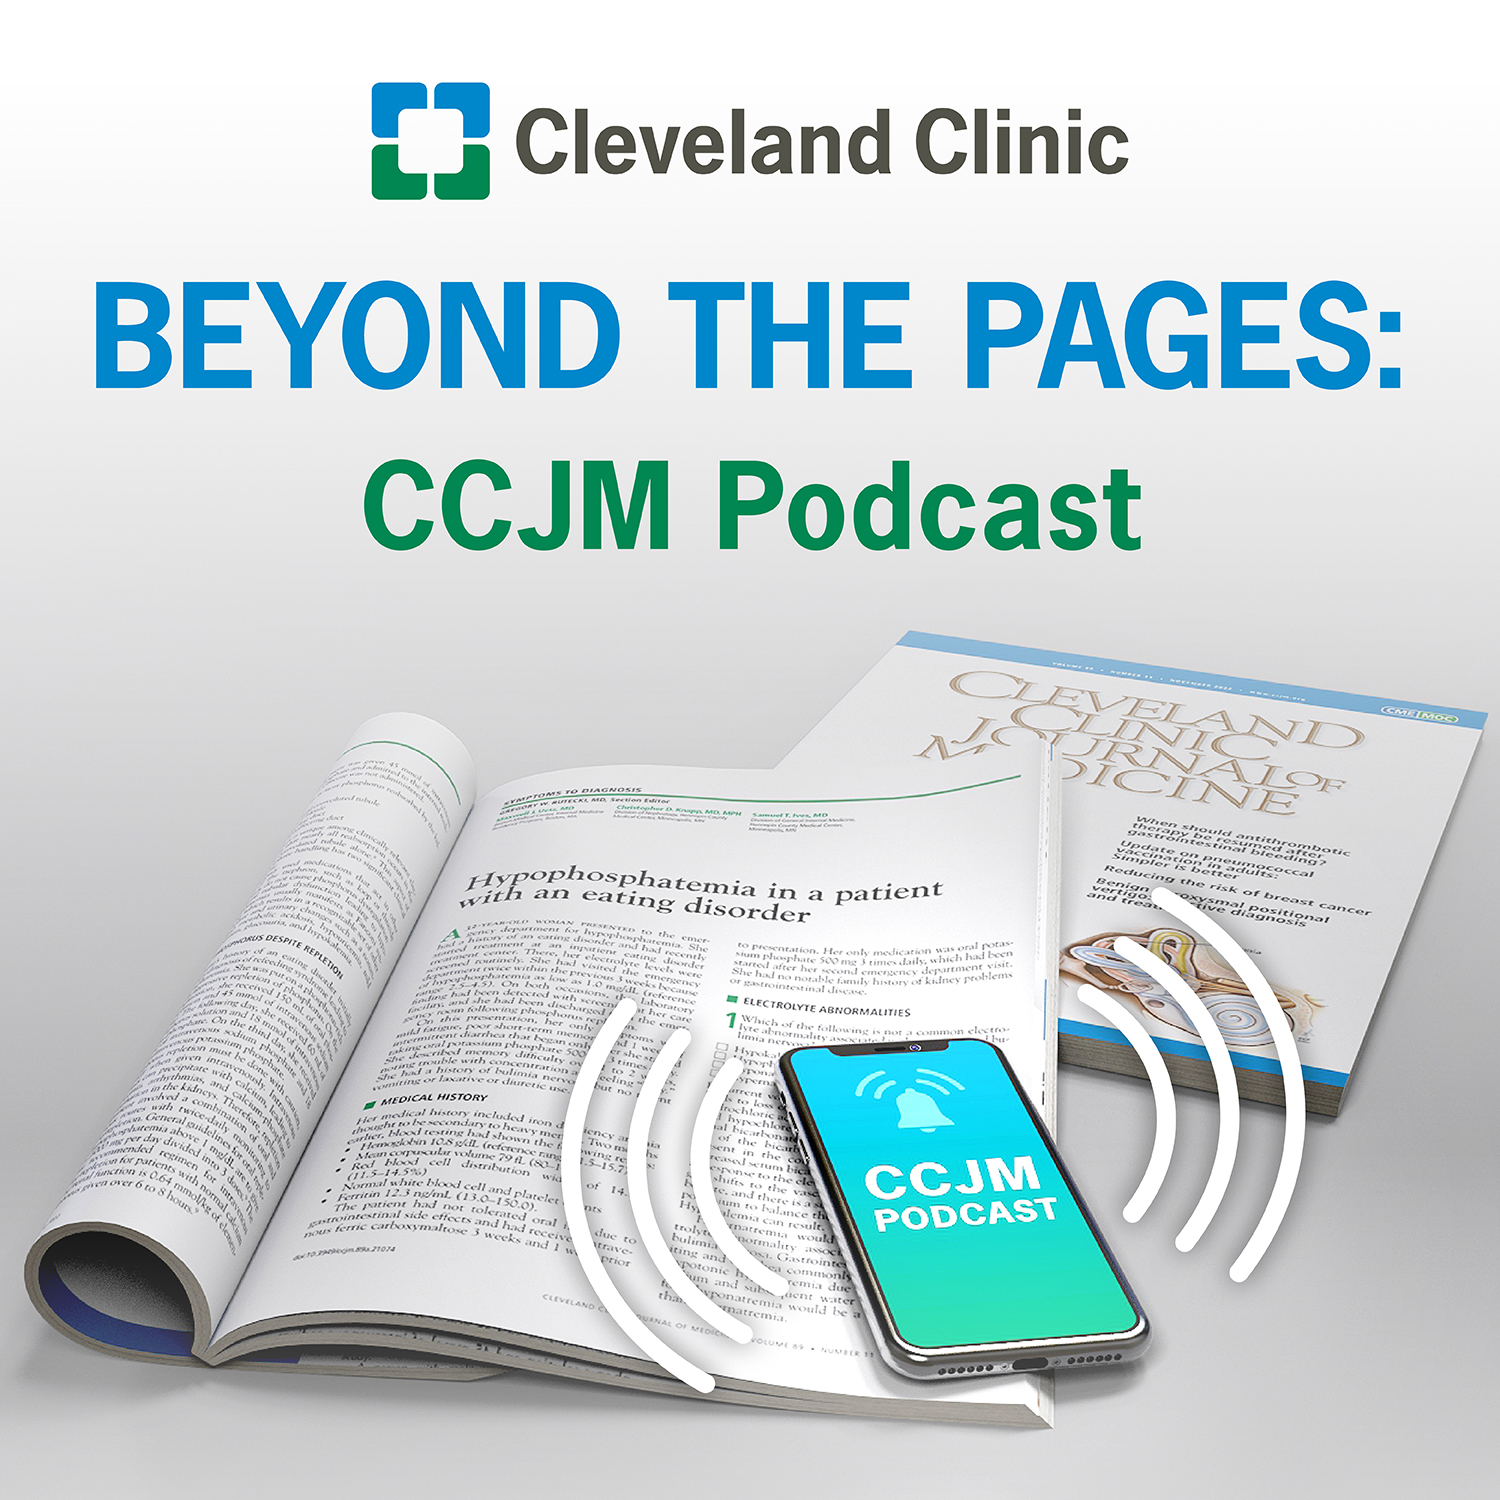 CCJM podcast image